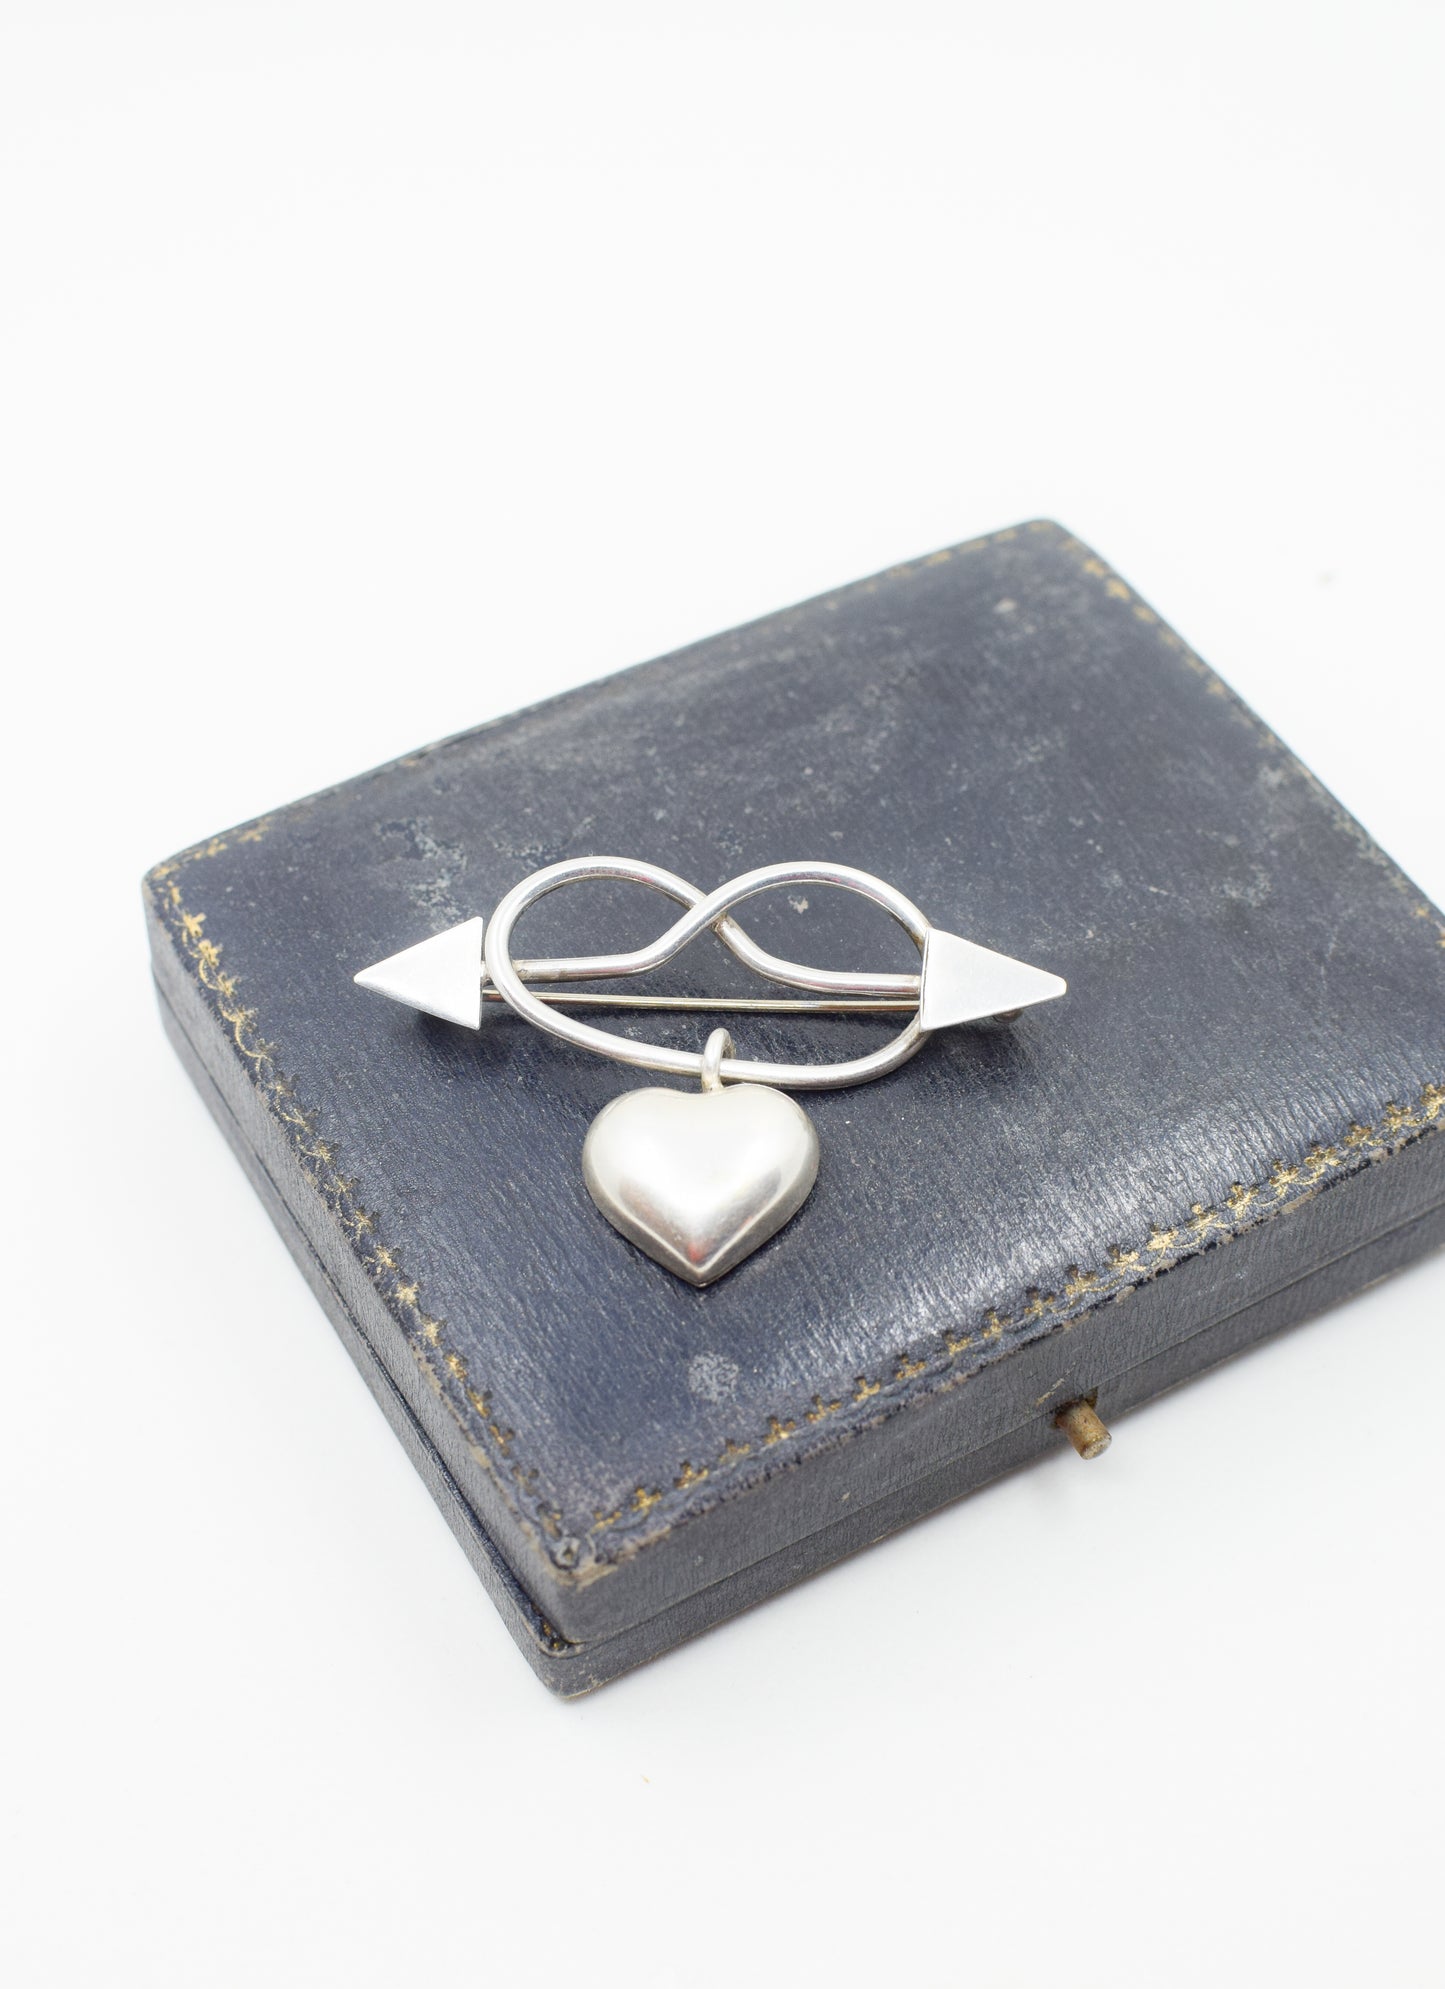 Vintage Sterling Silver Modernist "Love Knot" Brooch